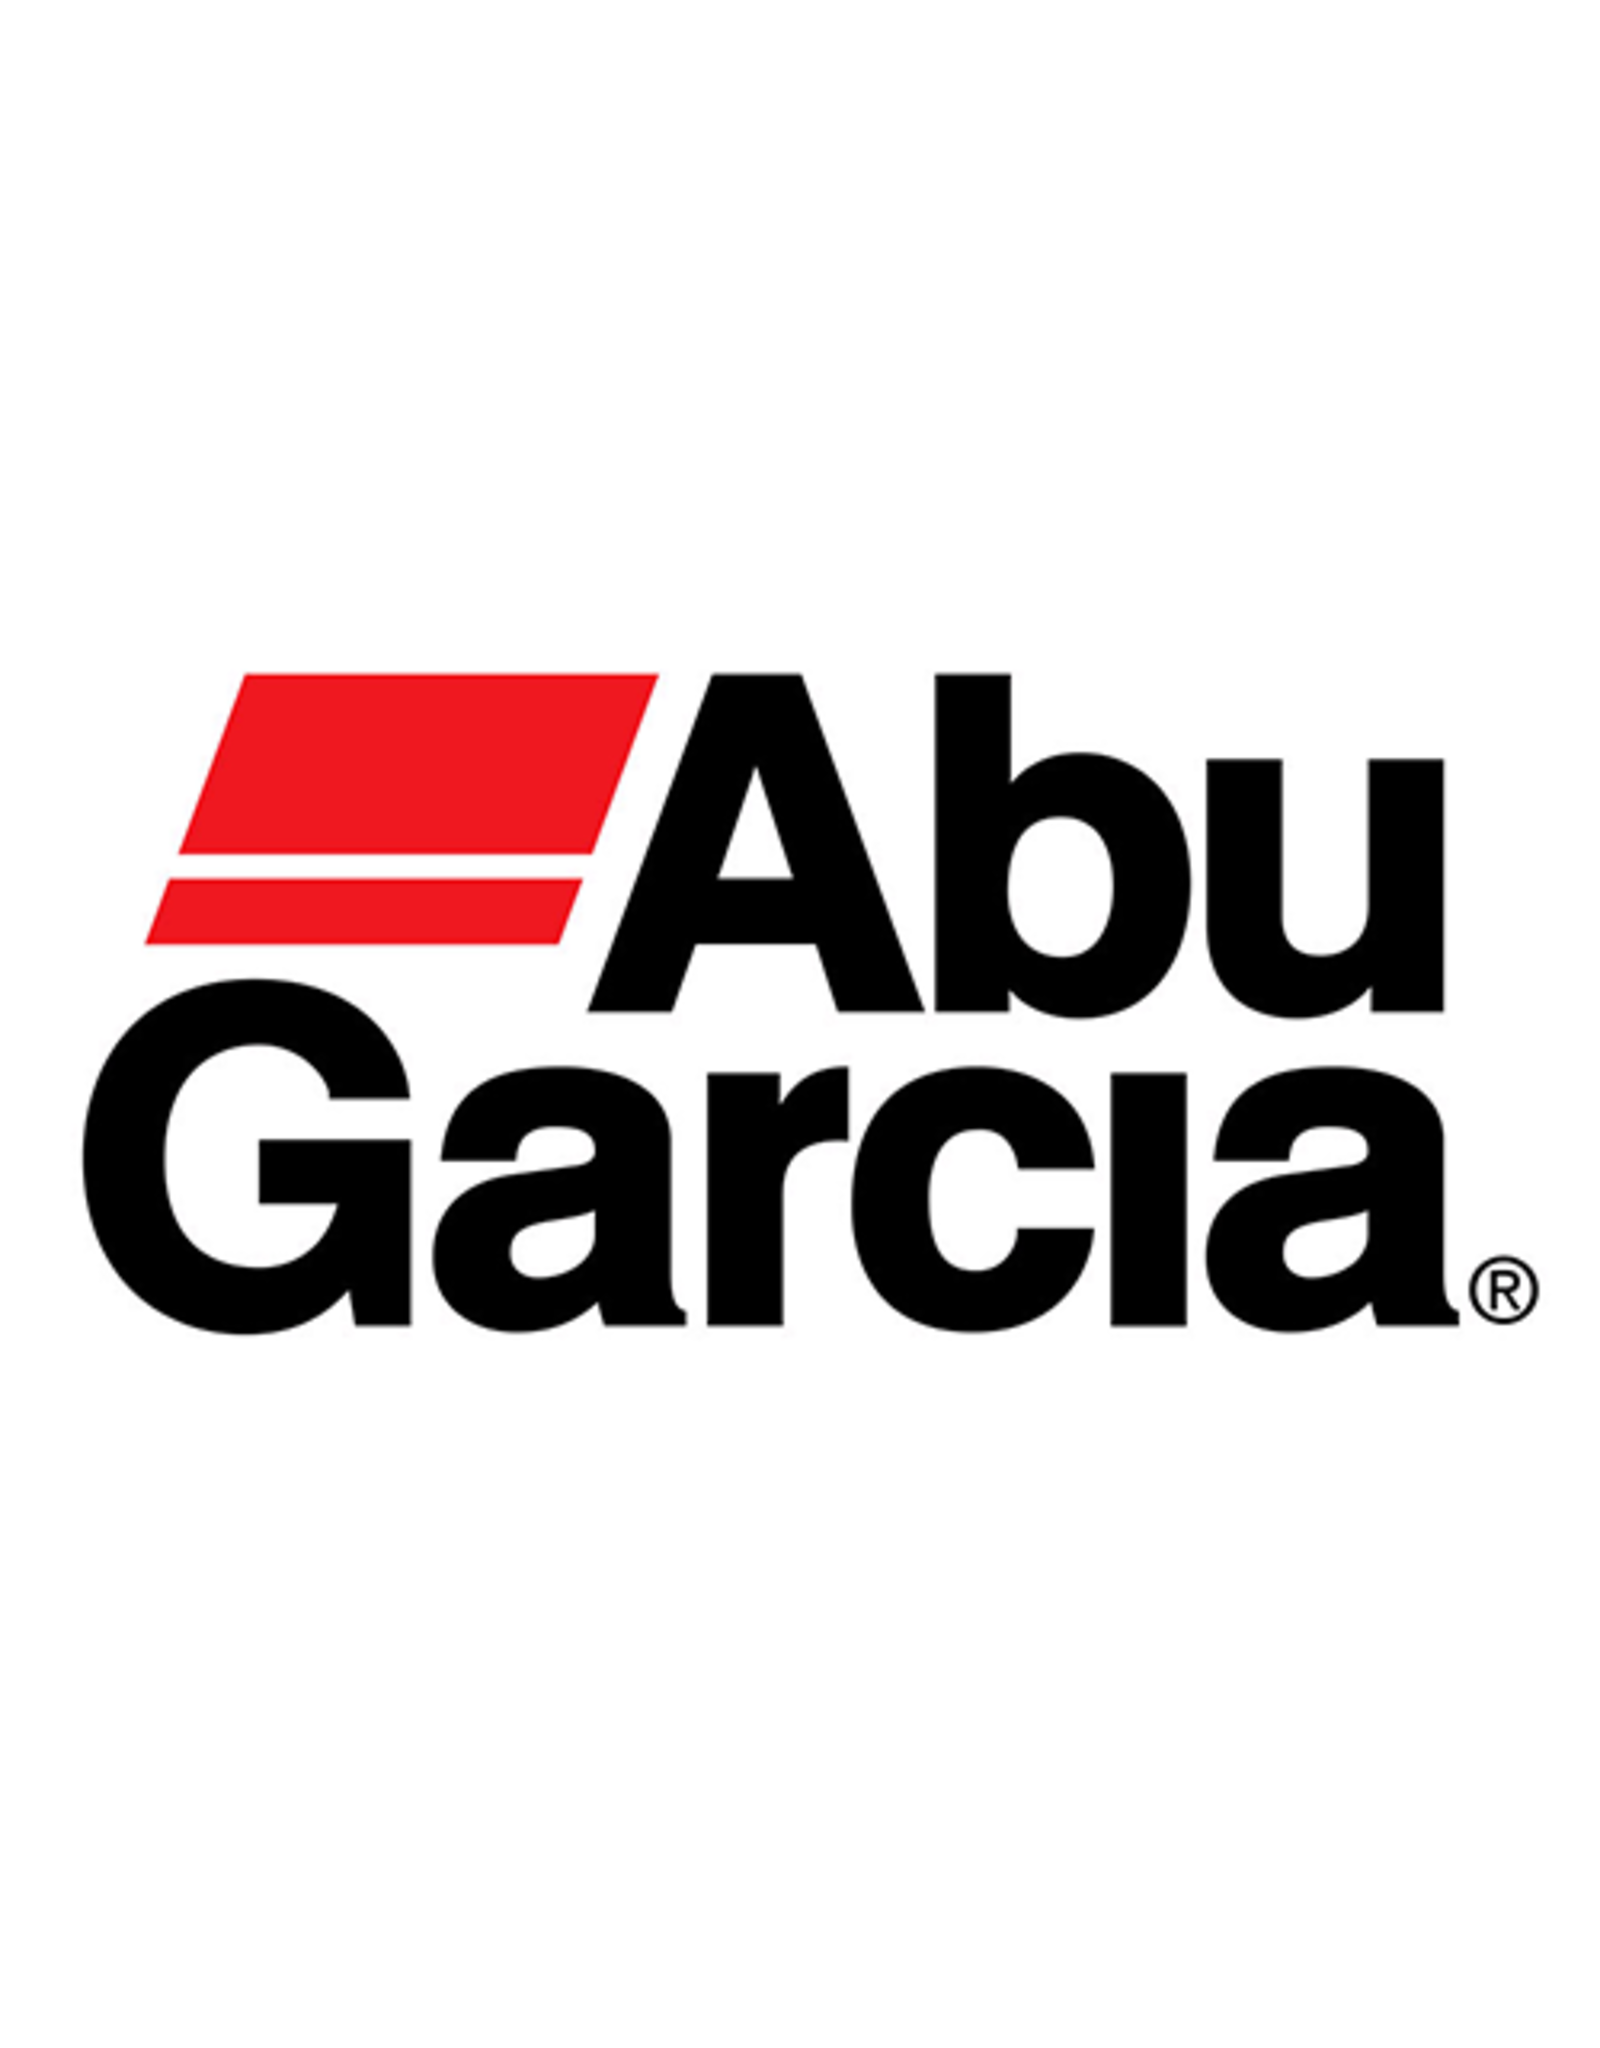 Abu Garcia 811565  FRAME